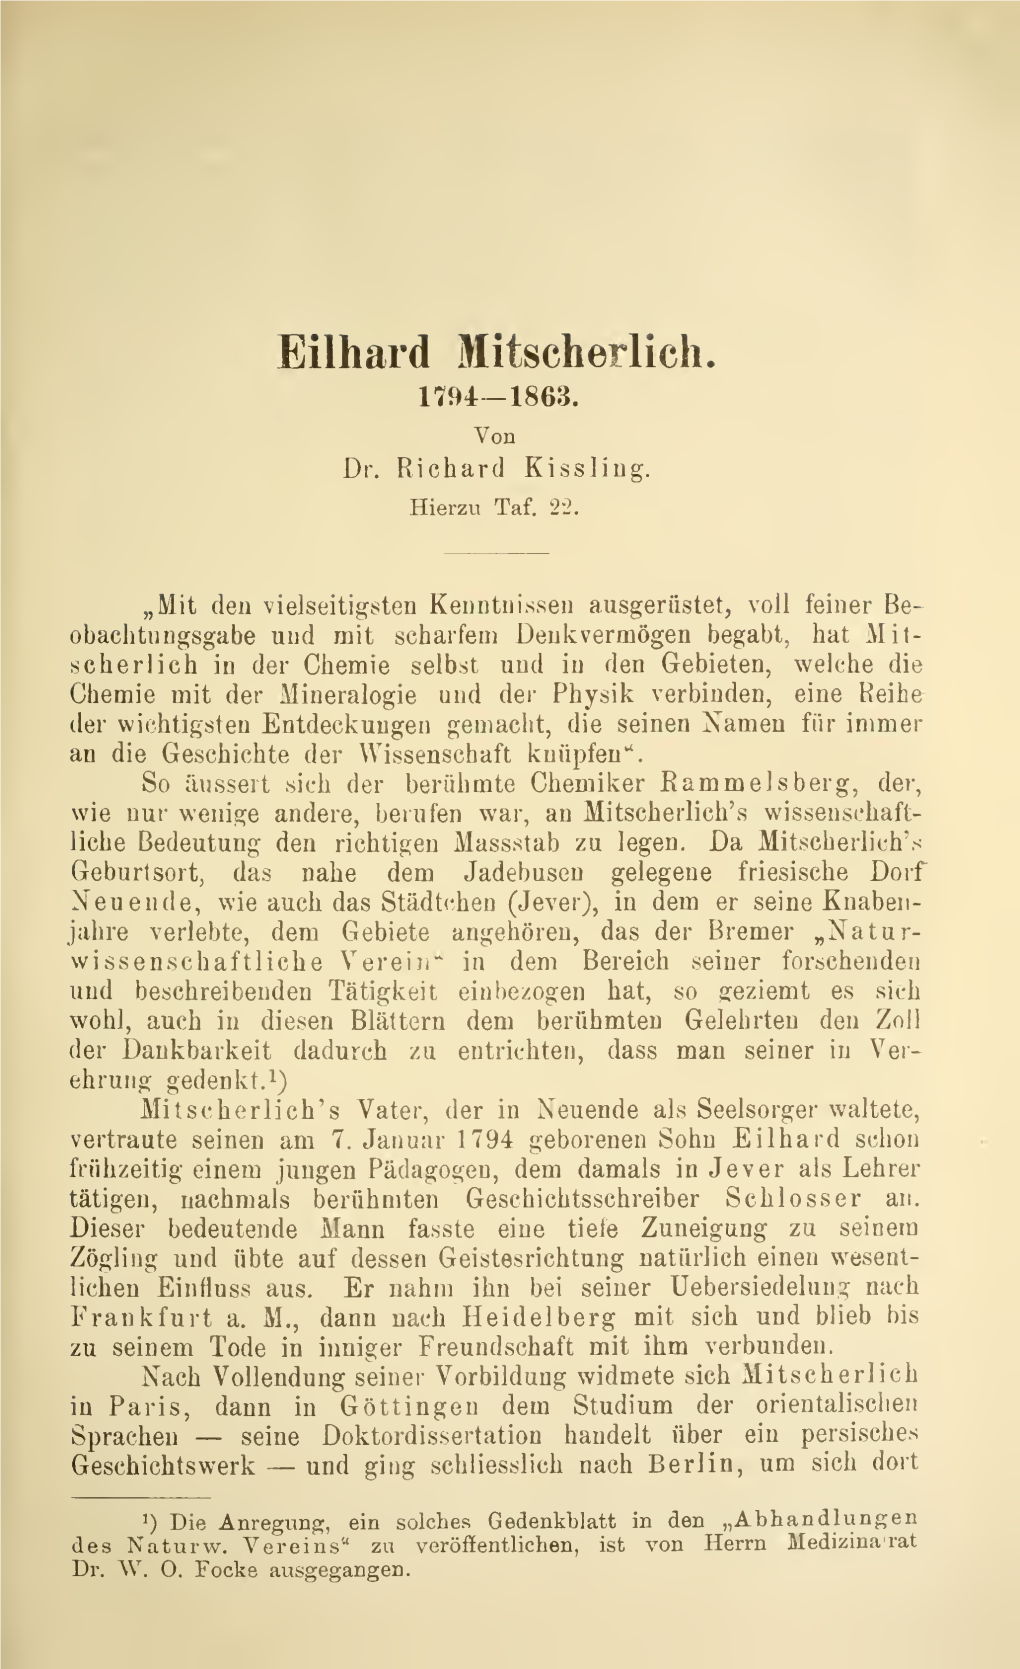 Eilhard Mitscherlich. 1794-1863